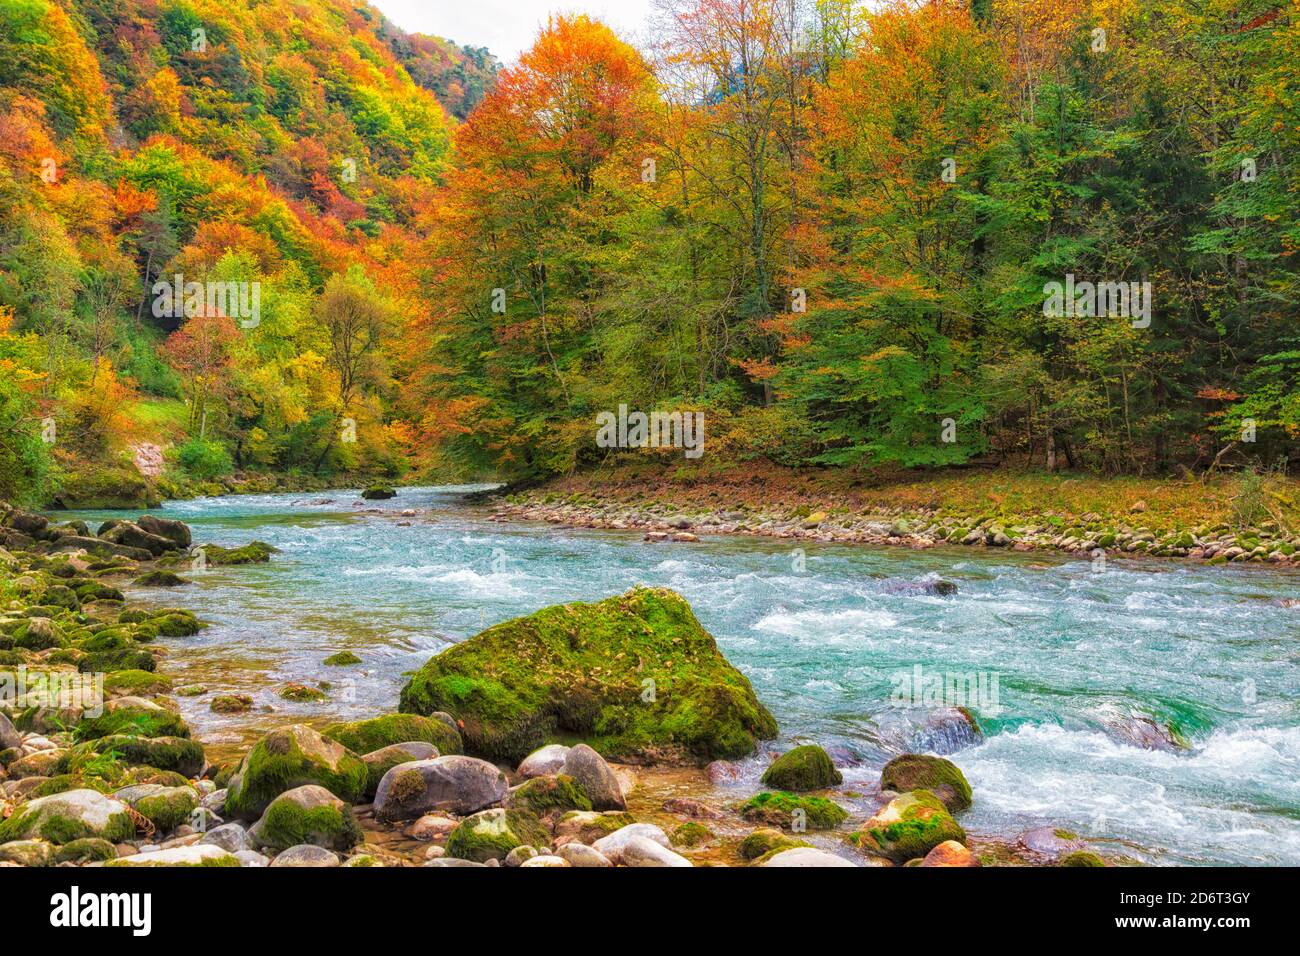 Paysage d'automne. Feuilles colorées sur les arbres. Rivière traversant une forêt. Banque D'Images